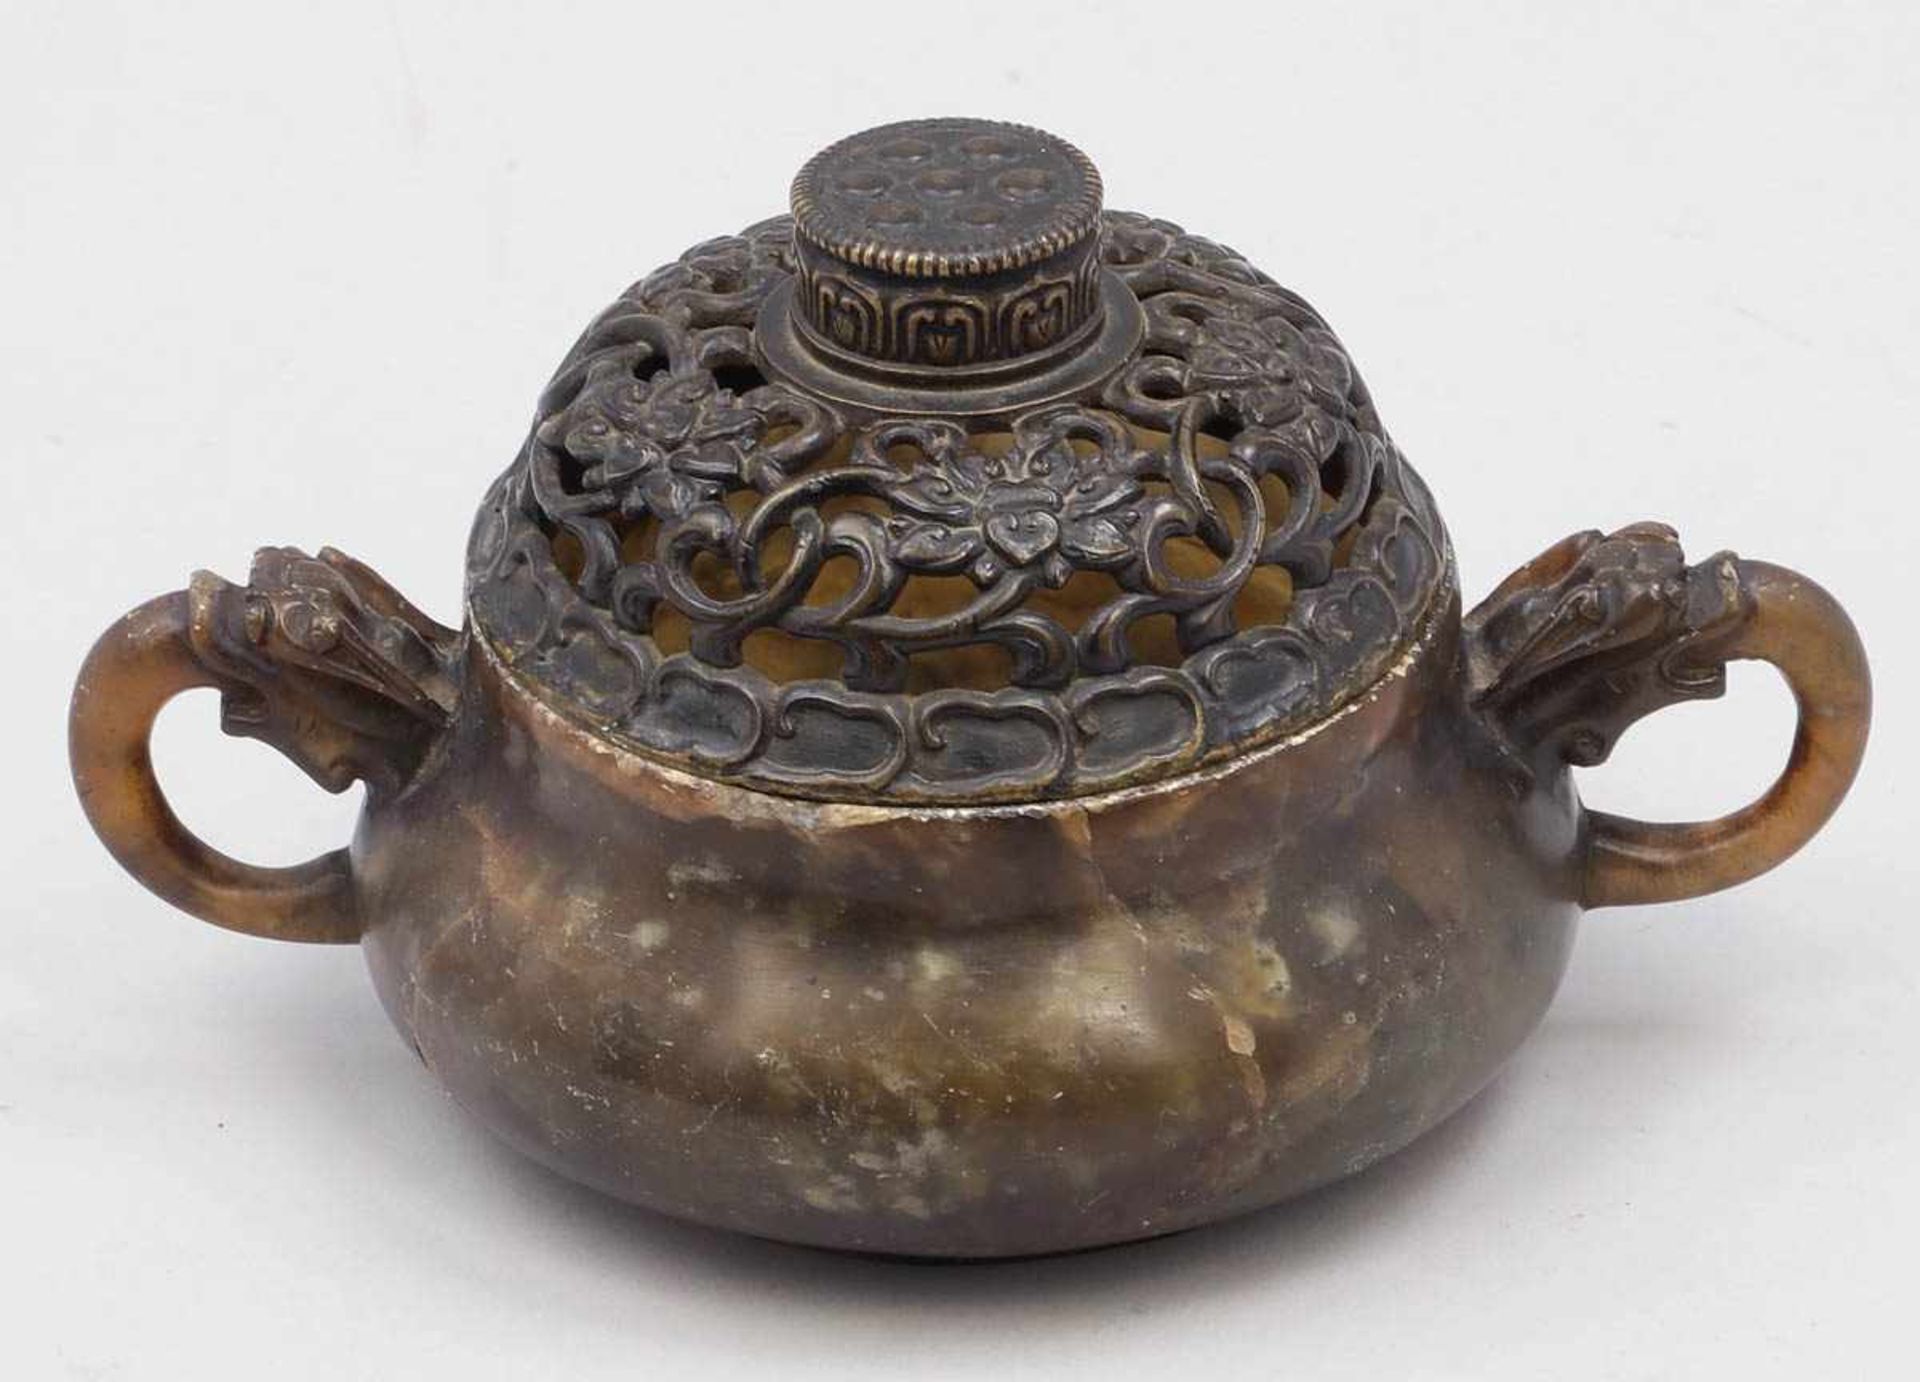 Räuchergefäß China, 19. Jahrhundert. Speckstein. Bronzedeckel. H. 9,5 cm. Durchbrochener Deckel